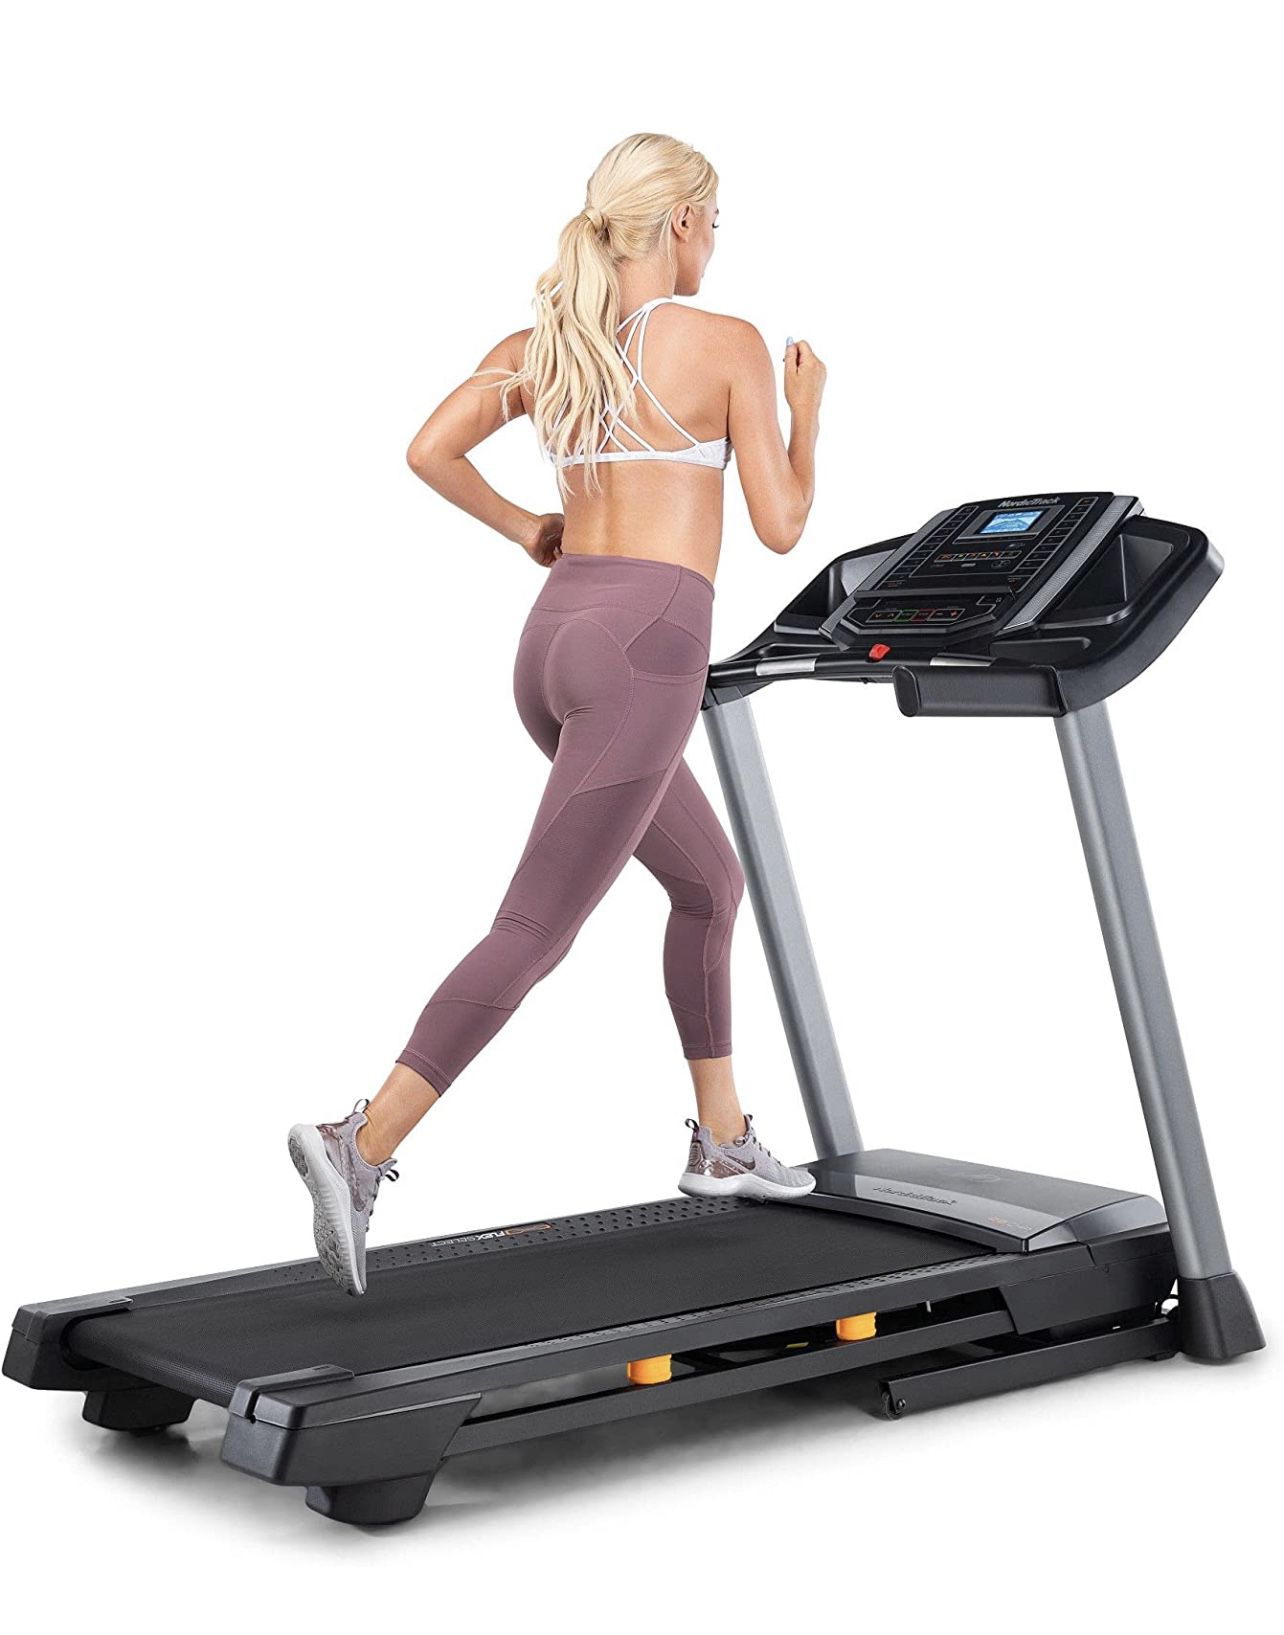 Treadmill - Nordic track